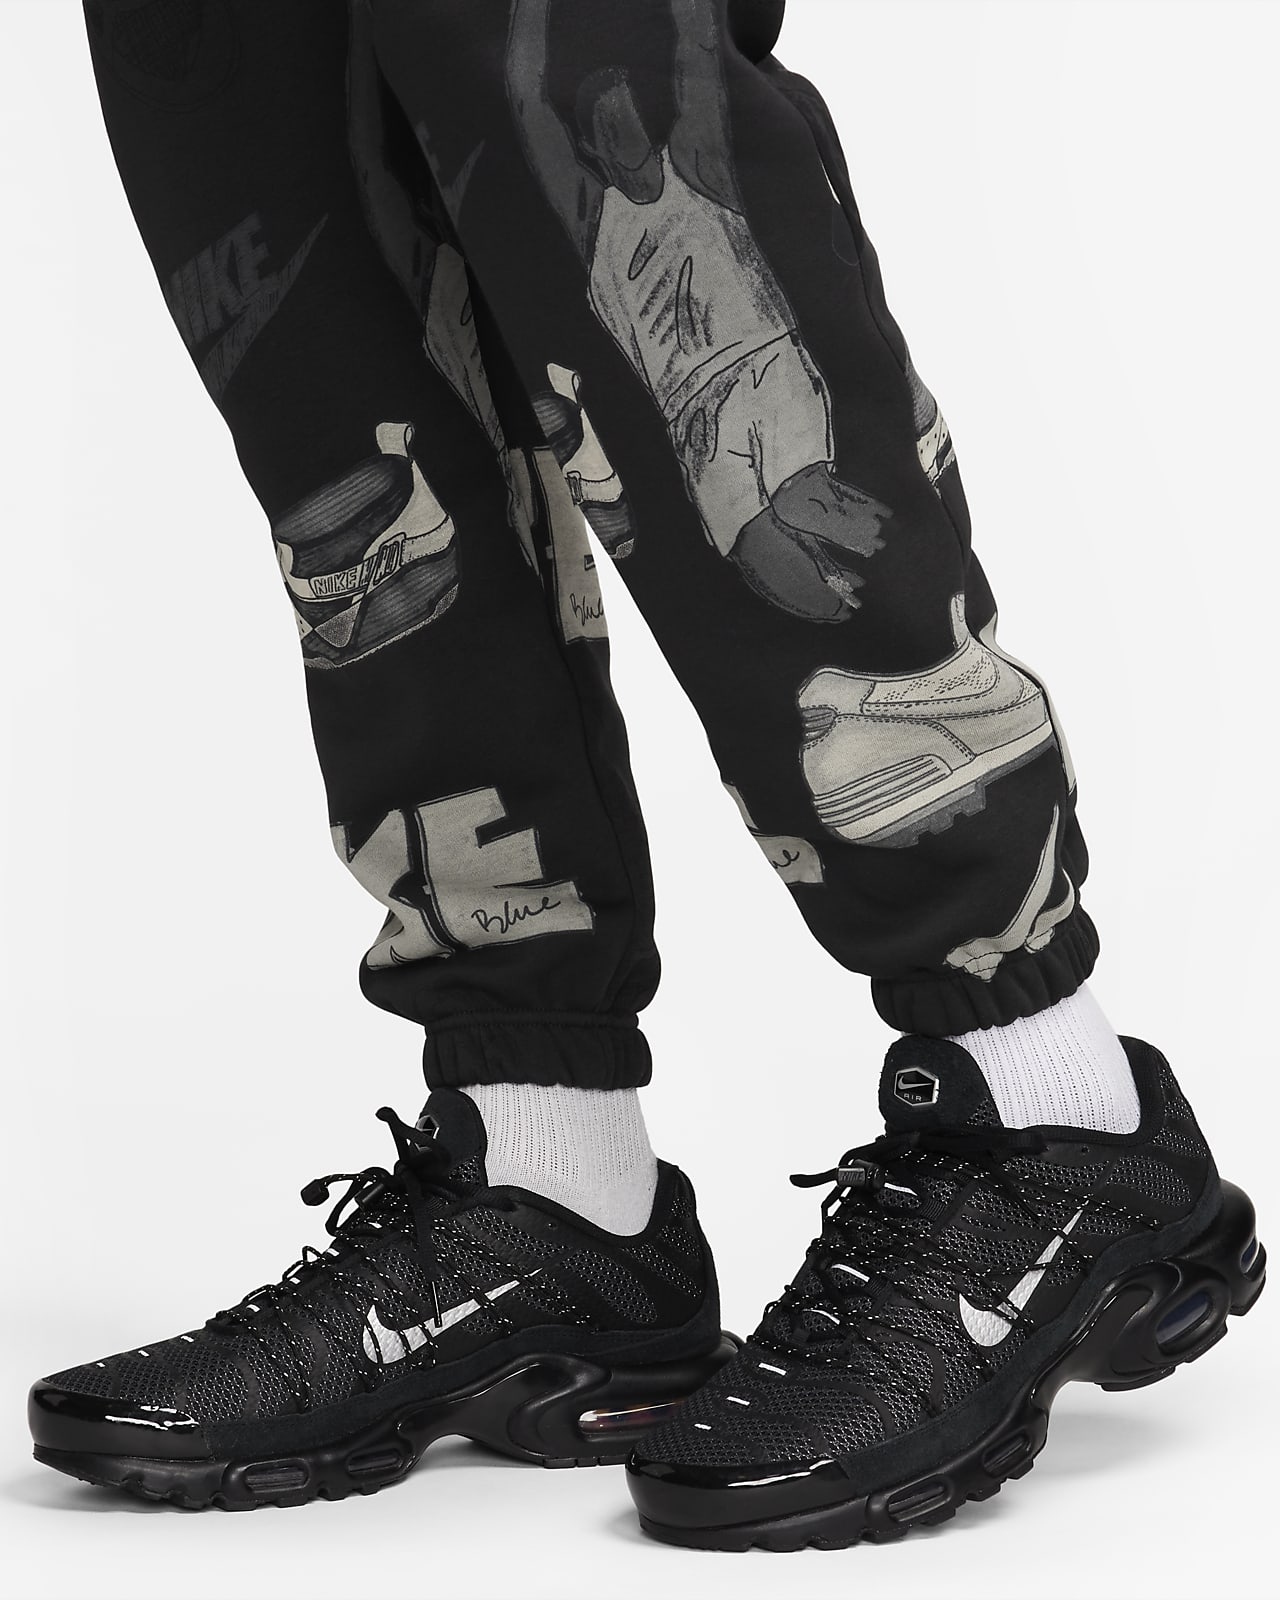 Nike Sportswear Club Fleece Men's Printed Joggers.